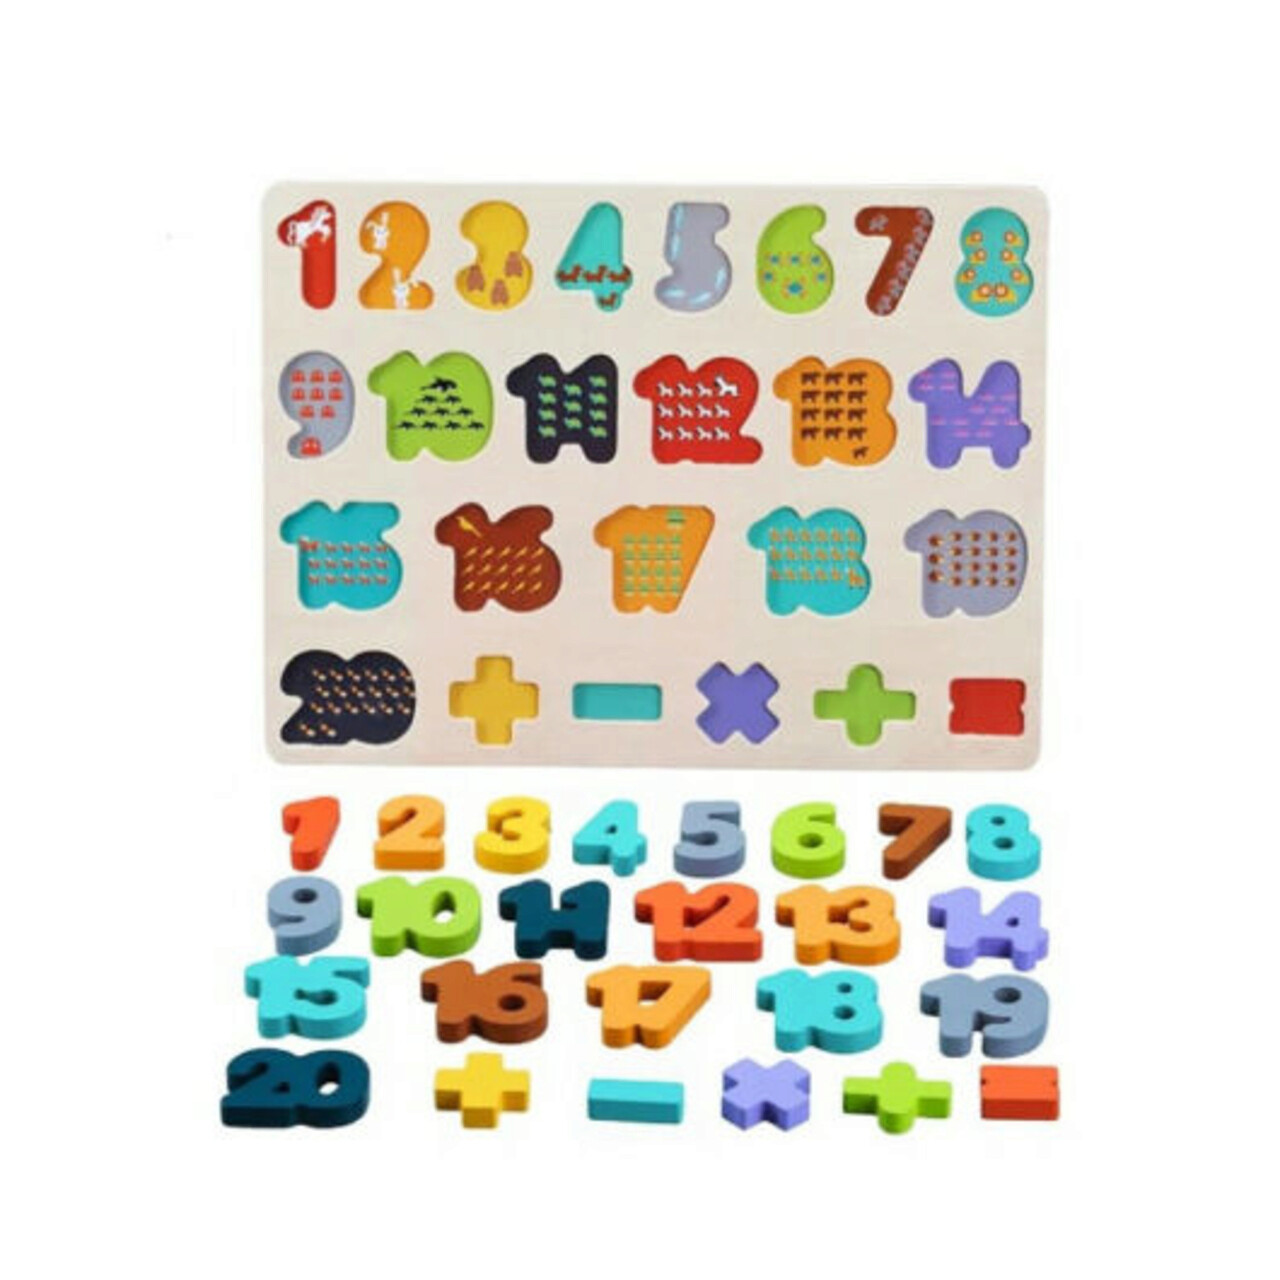 Puzzle Incastru Din Lemn Cu Numere De La 1 La 20, 26 Bucati, Phoohi, PH07J012, Multicolor